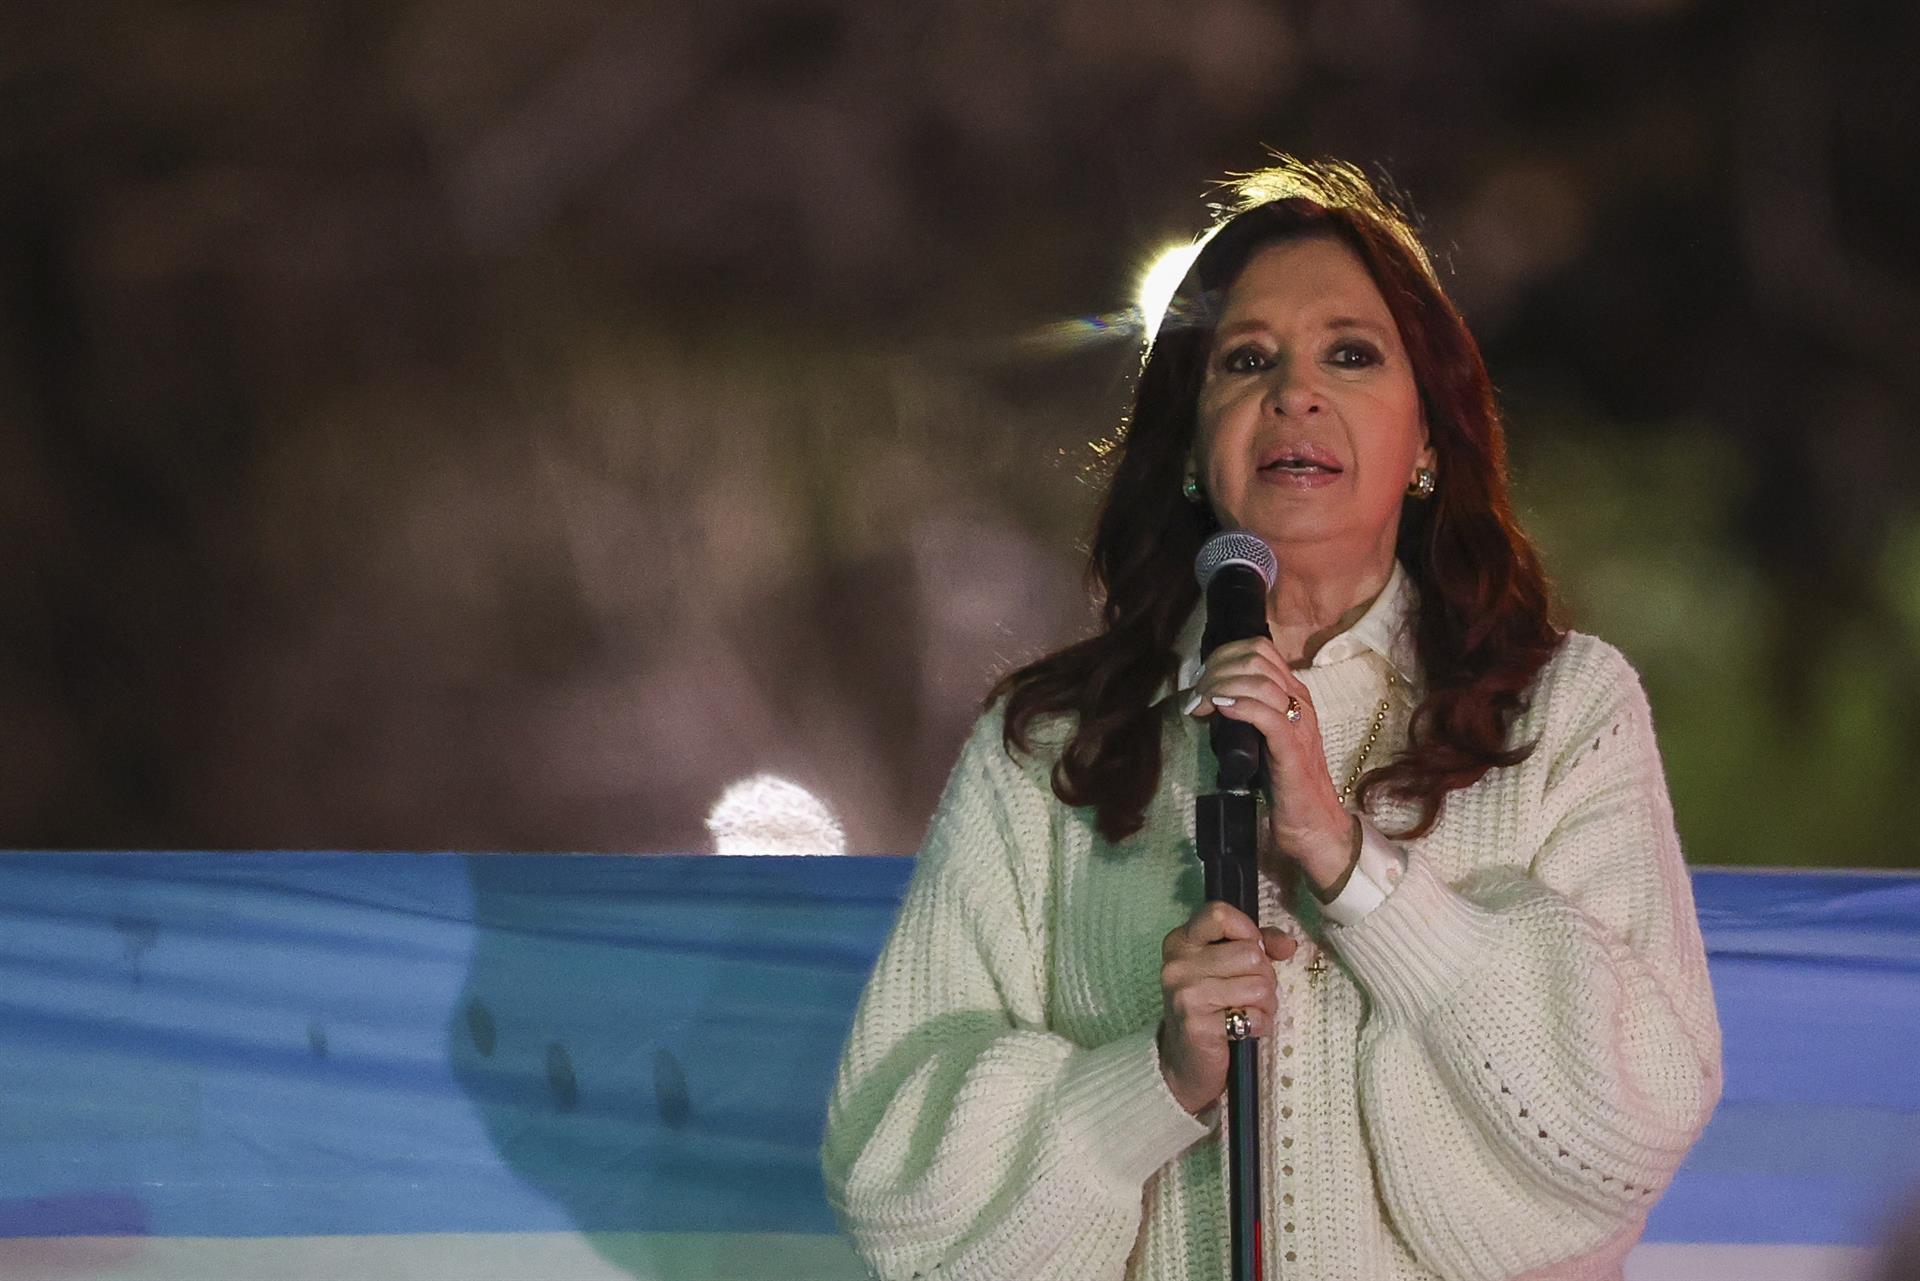 El Grupo de Puebla se reunirá en Argentina para respaldar a Cristina Fernández